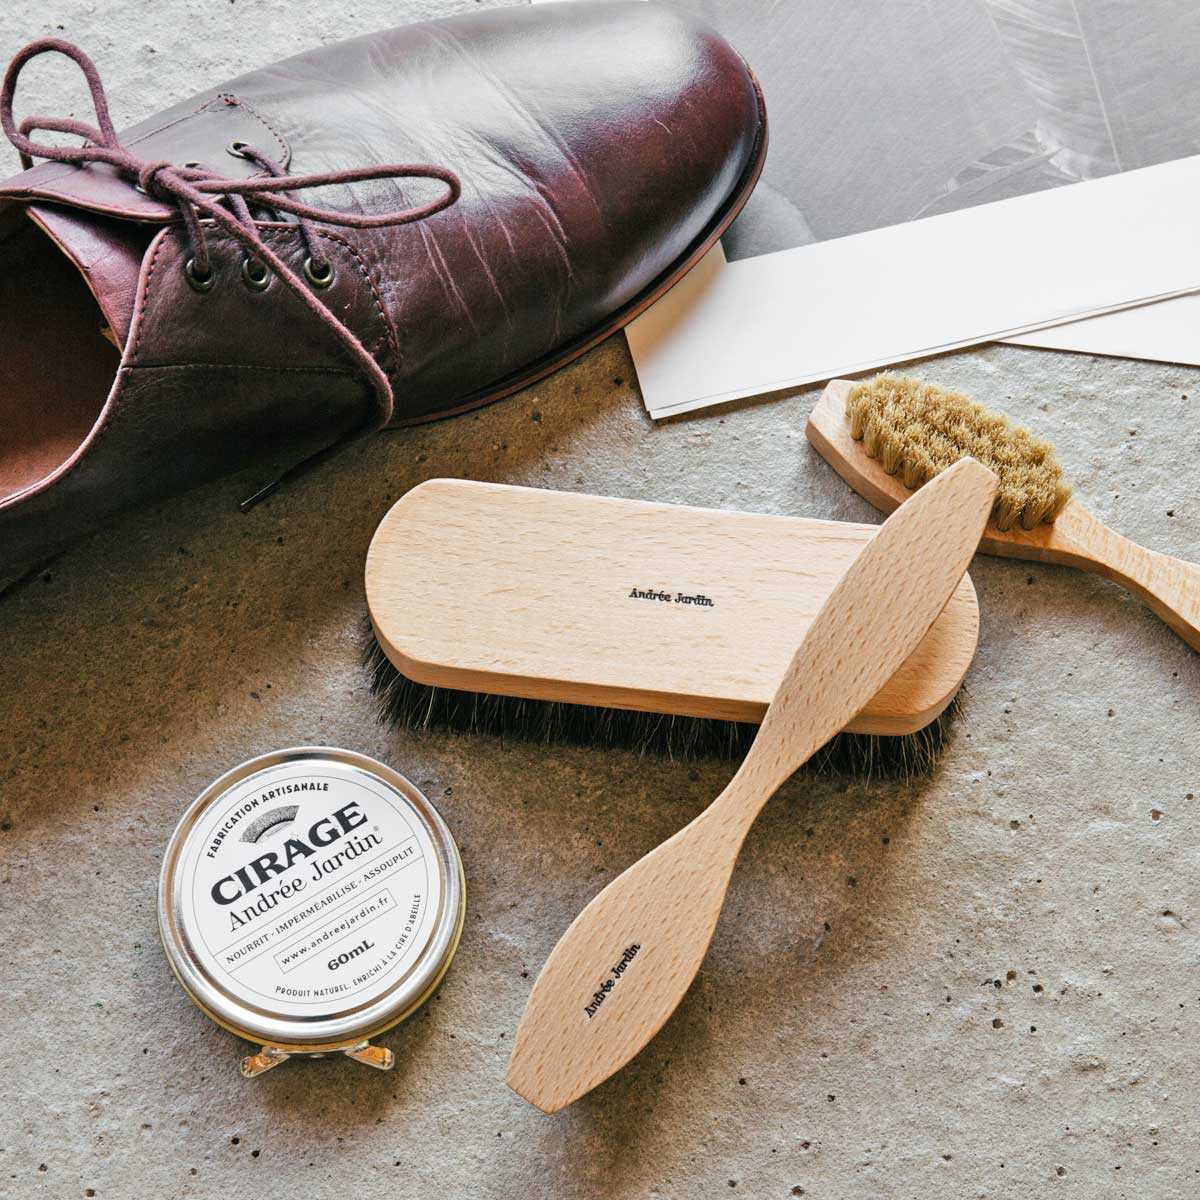 Kit de cirage pour chaussures en cuir - Fabrication artisanale